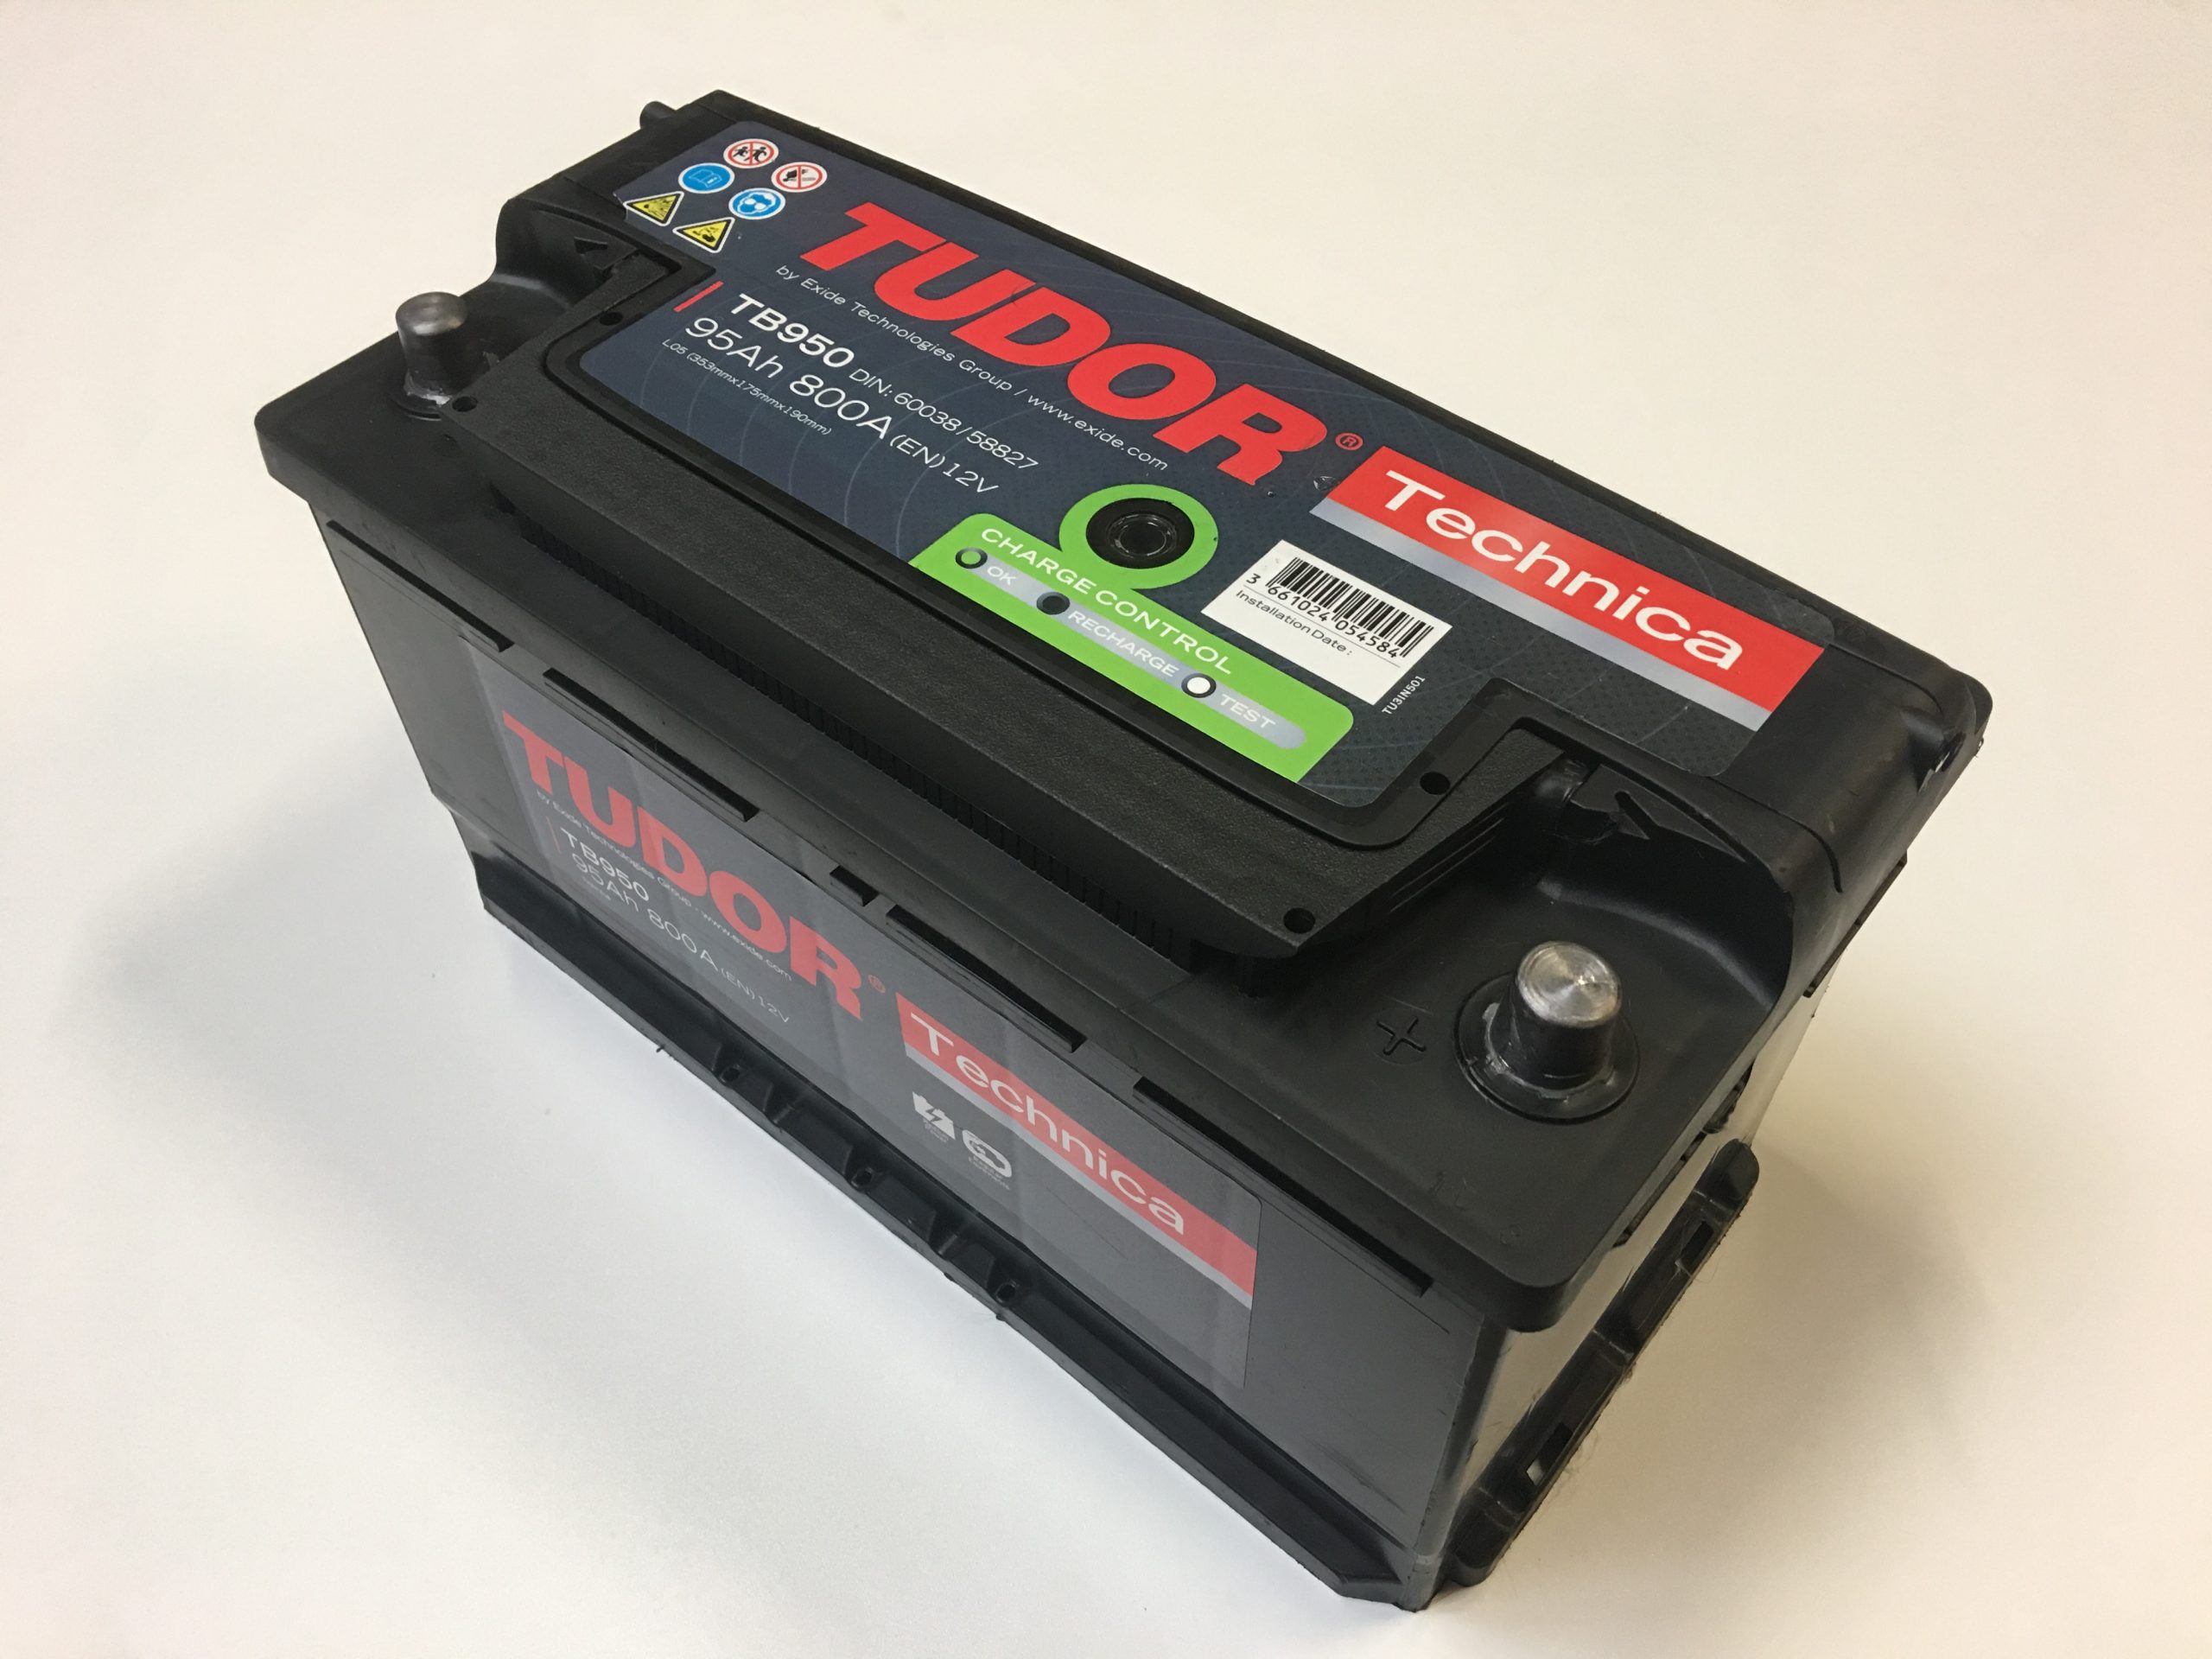 La batería coche 95Ah 800A: durabilidad y resistencia en un solo paquete